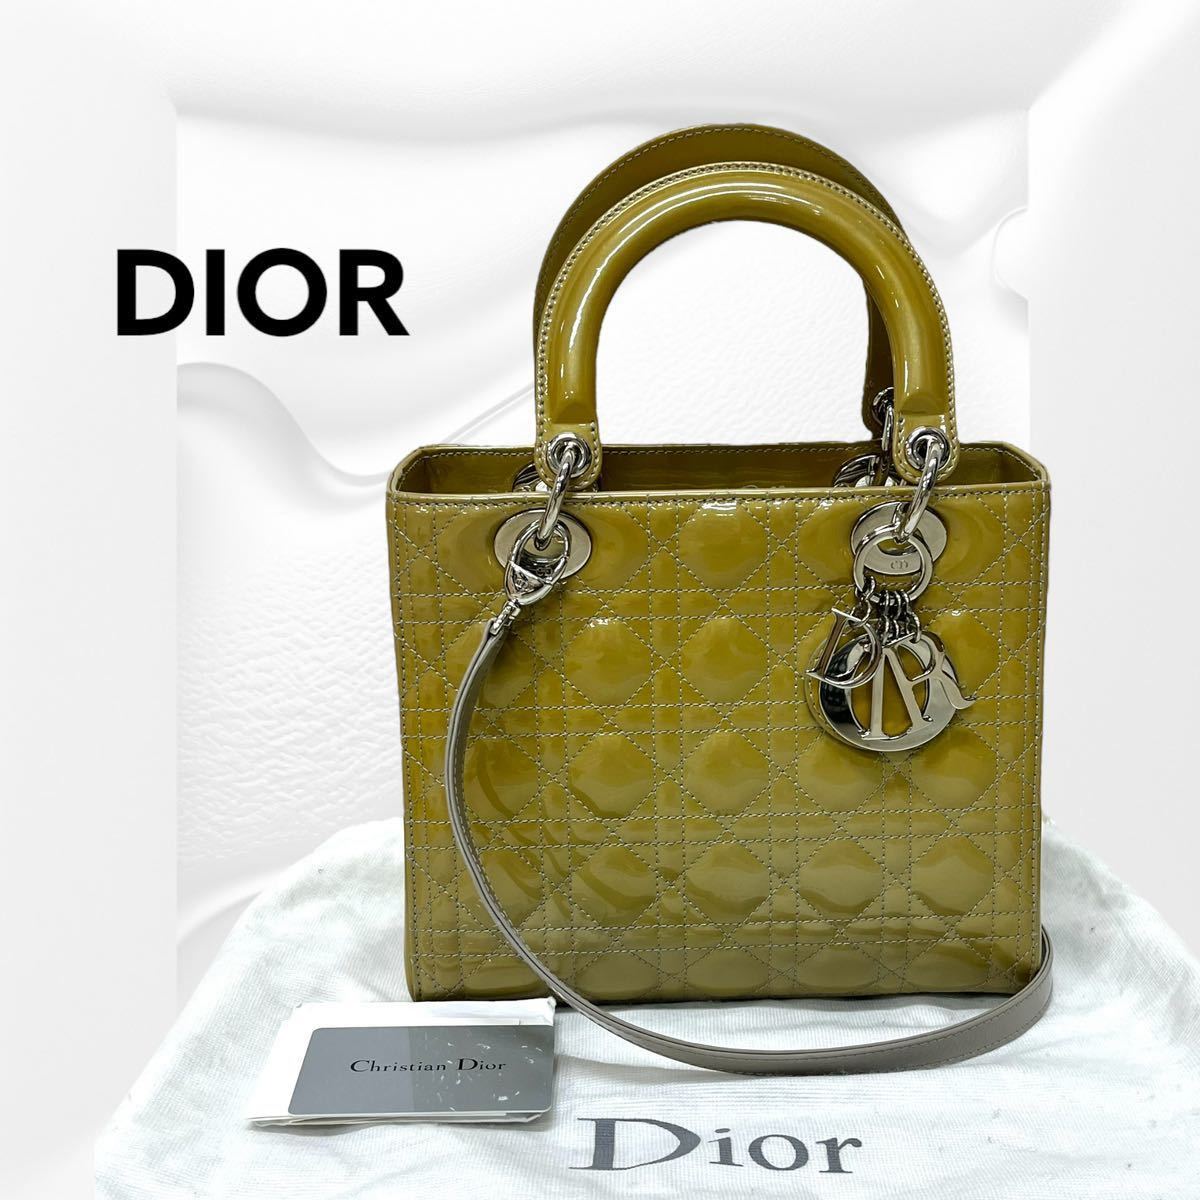 保存袋ギャラ付き Christian Dior クリスチャン ディオール レディディオール エナメル ロゴチャーム 2way ハンドバッグ